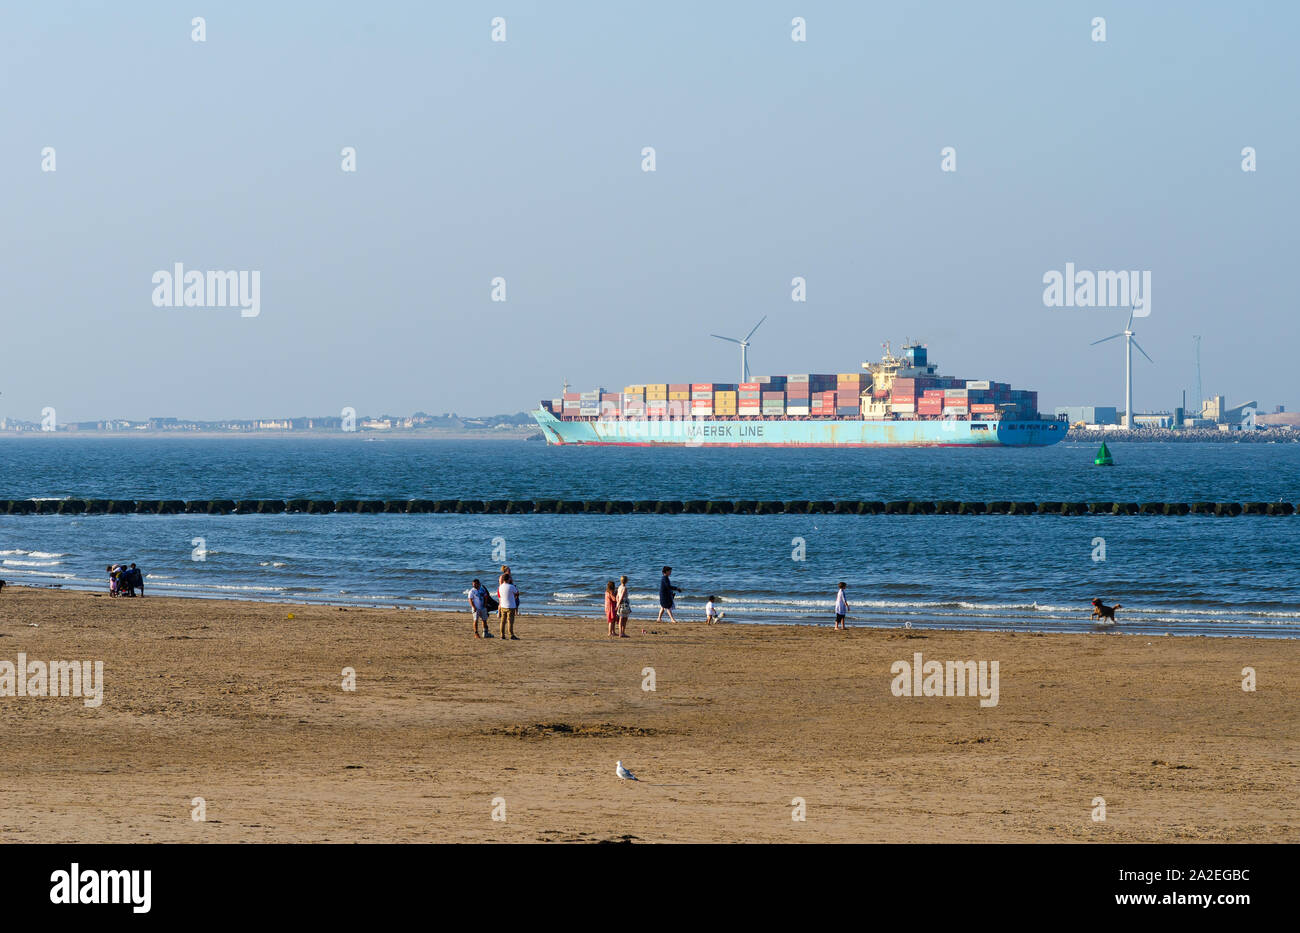 La gente caminando en la playa en el río Mersey. "Maersk Line' carguero con contenedores está saliendo de puerto de Liverpool. Foto de stock